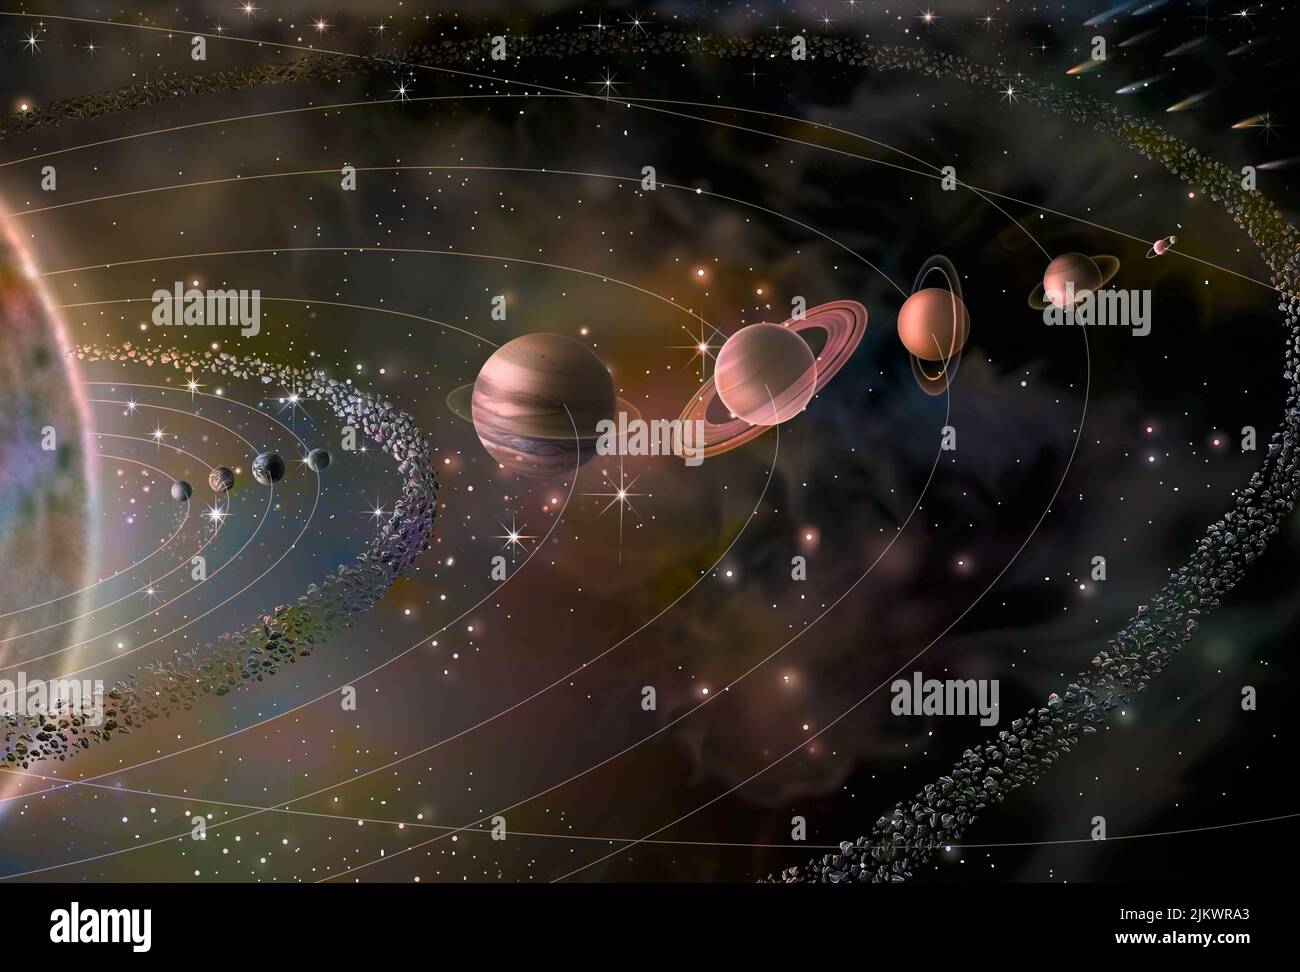 Sistema solare con i suoi nove pianeti (Mercurio, Venere, Terra, Marte, Giove, Saturno, Urano, Nettuno, Plutone) e il sole. Foto Stock